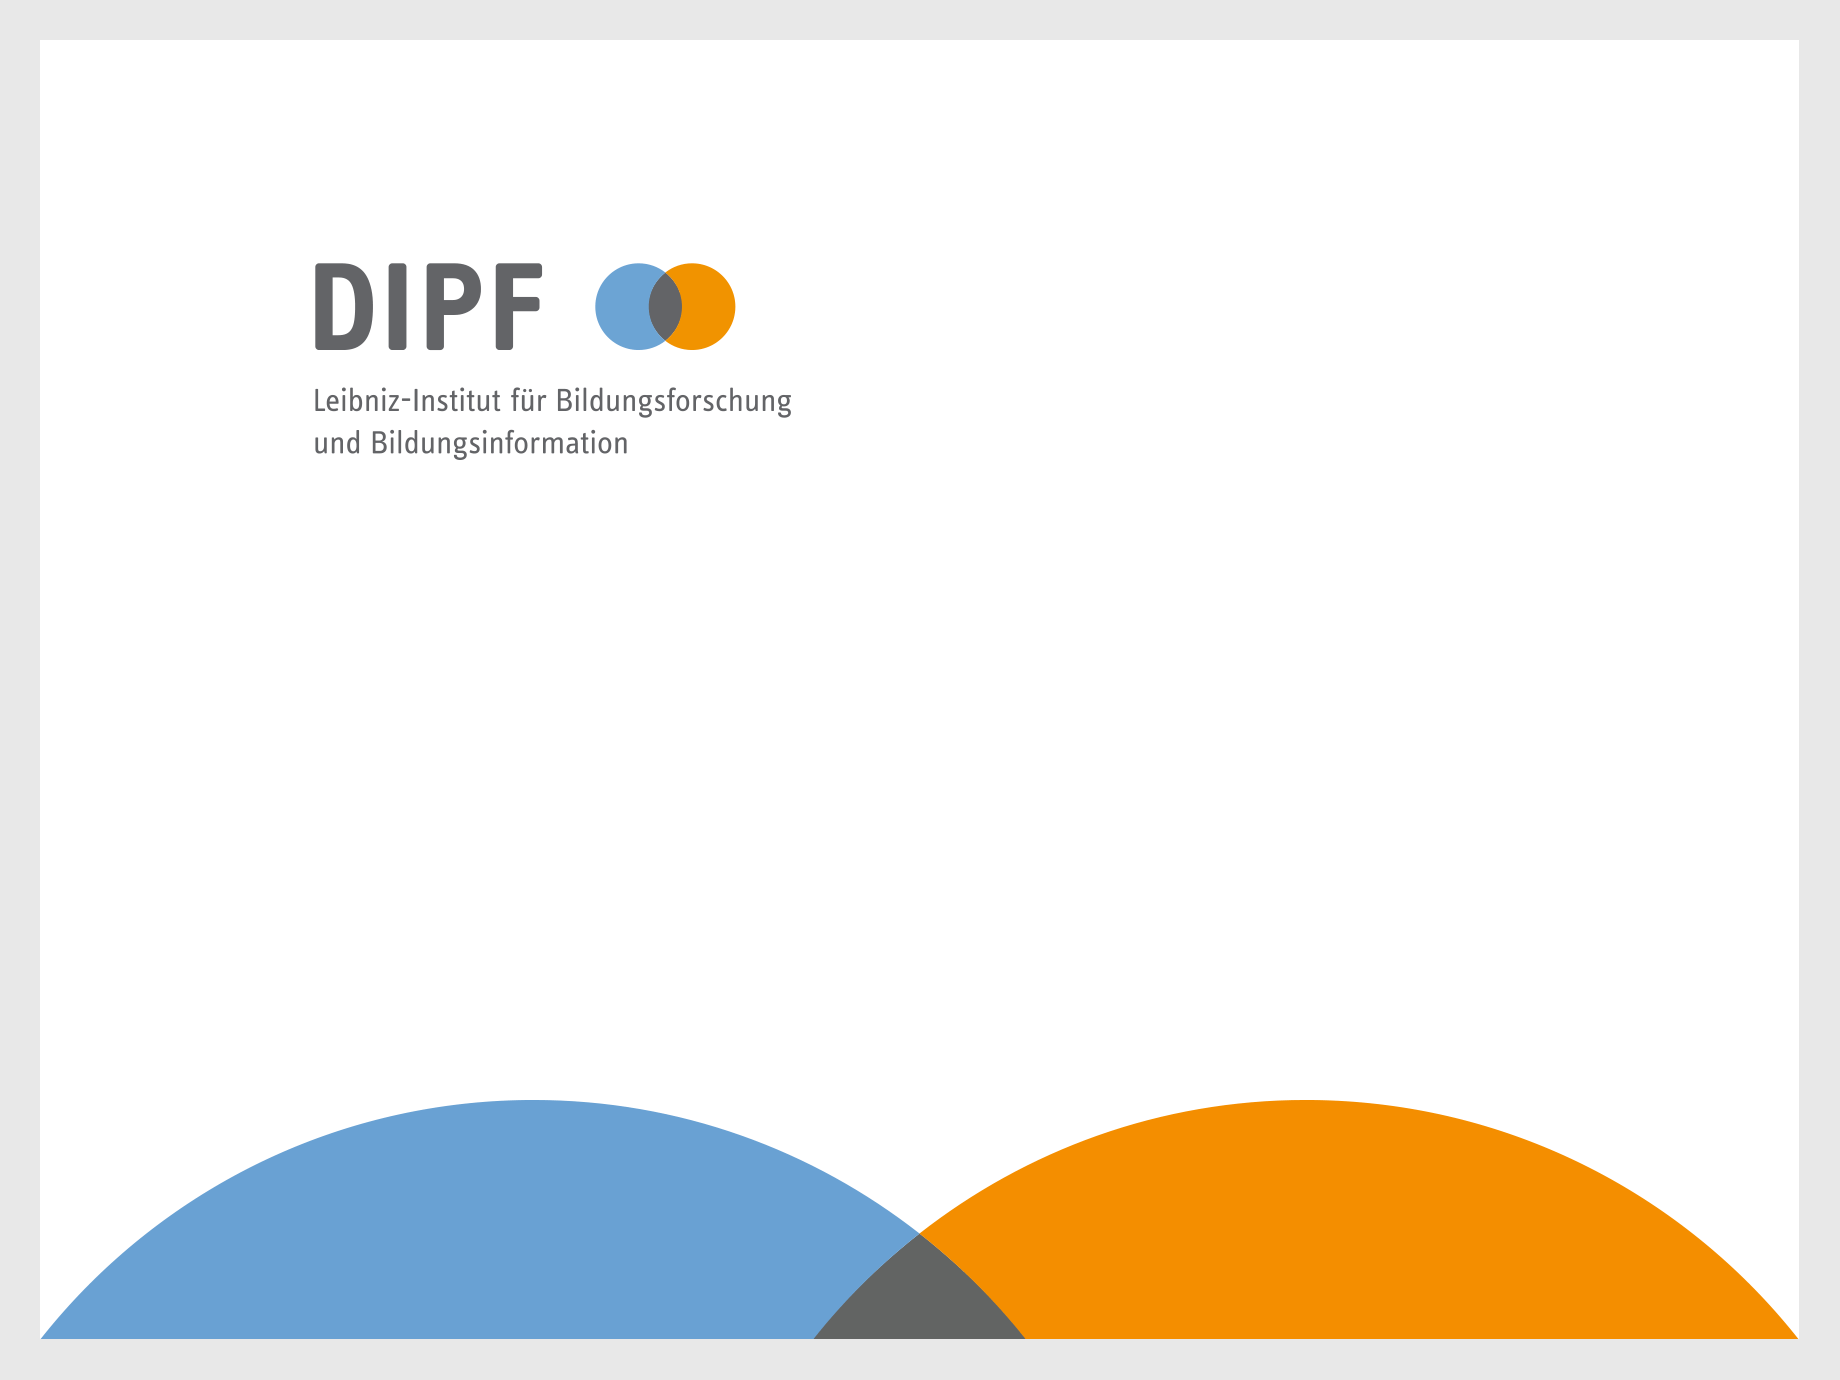 Zu sehen ist das Akronym DIPF in Grau. Rechts davon stehen zwei sich überschneidene Kreise. Der eine Kreis ist blau, der andere Orange. Darunter steht linksbündig 'Leibniz-Institut für Bildungsforschung und Bildungsinformation'.